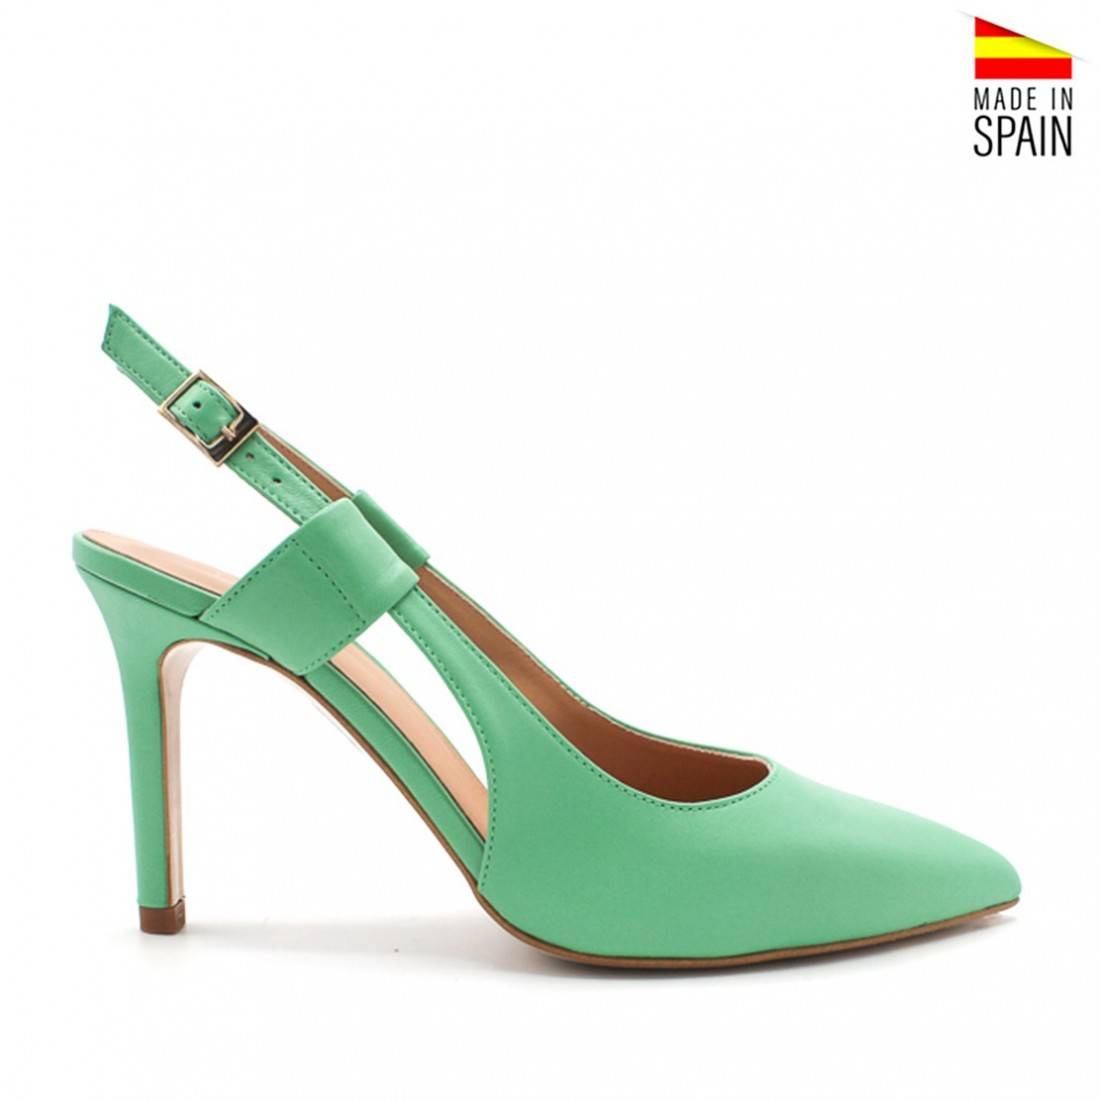 Zapatos de salón con tacón de color Verde Menta